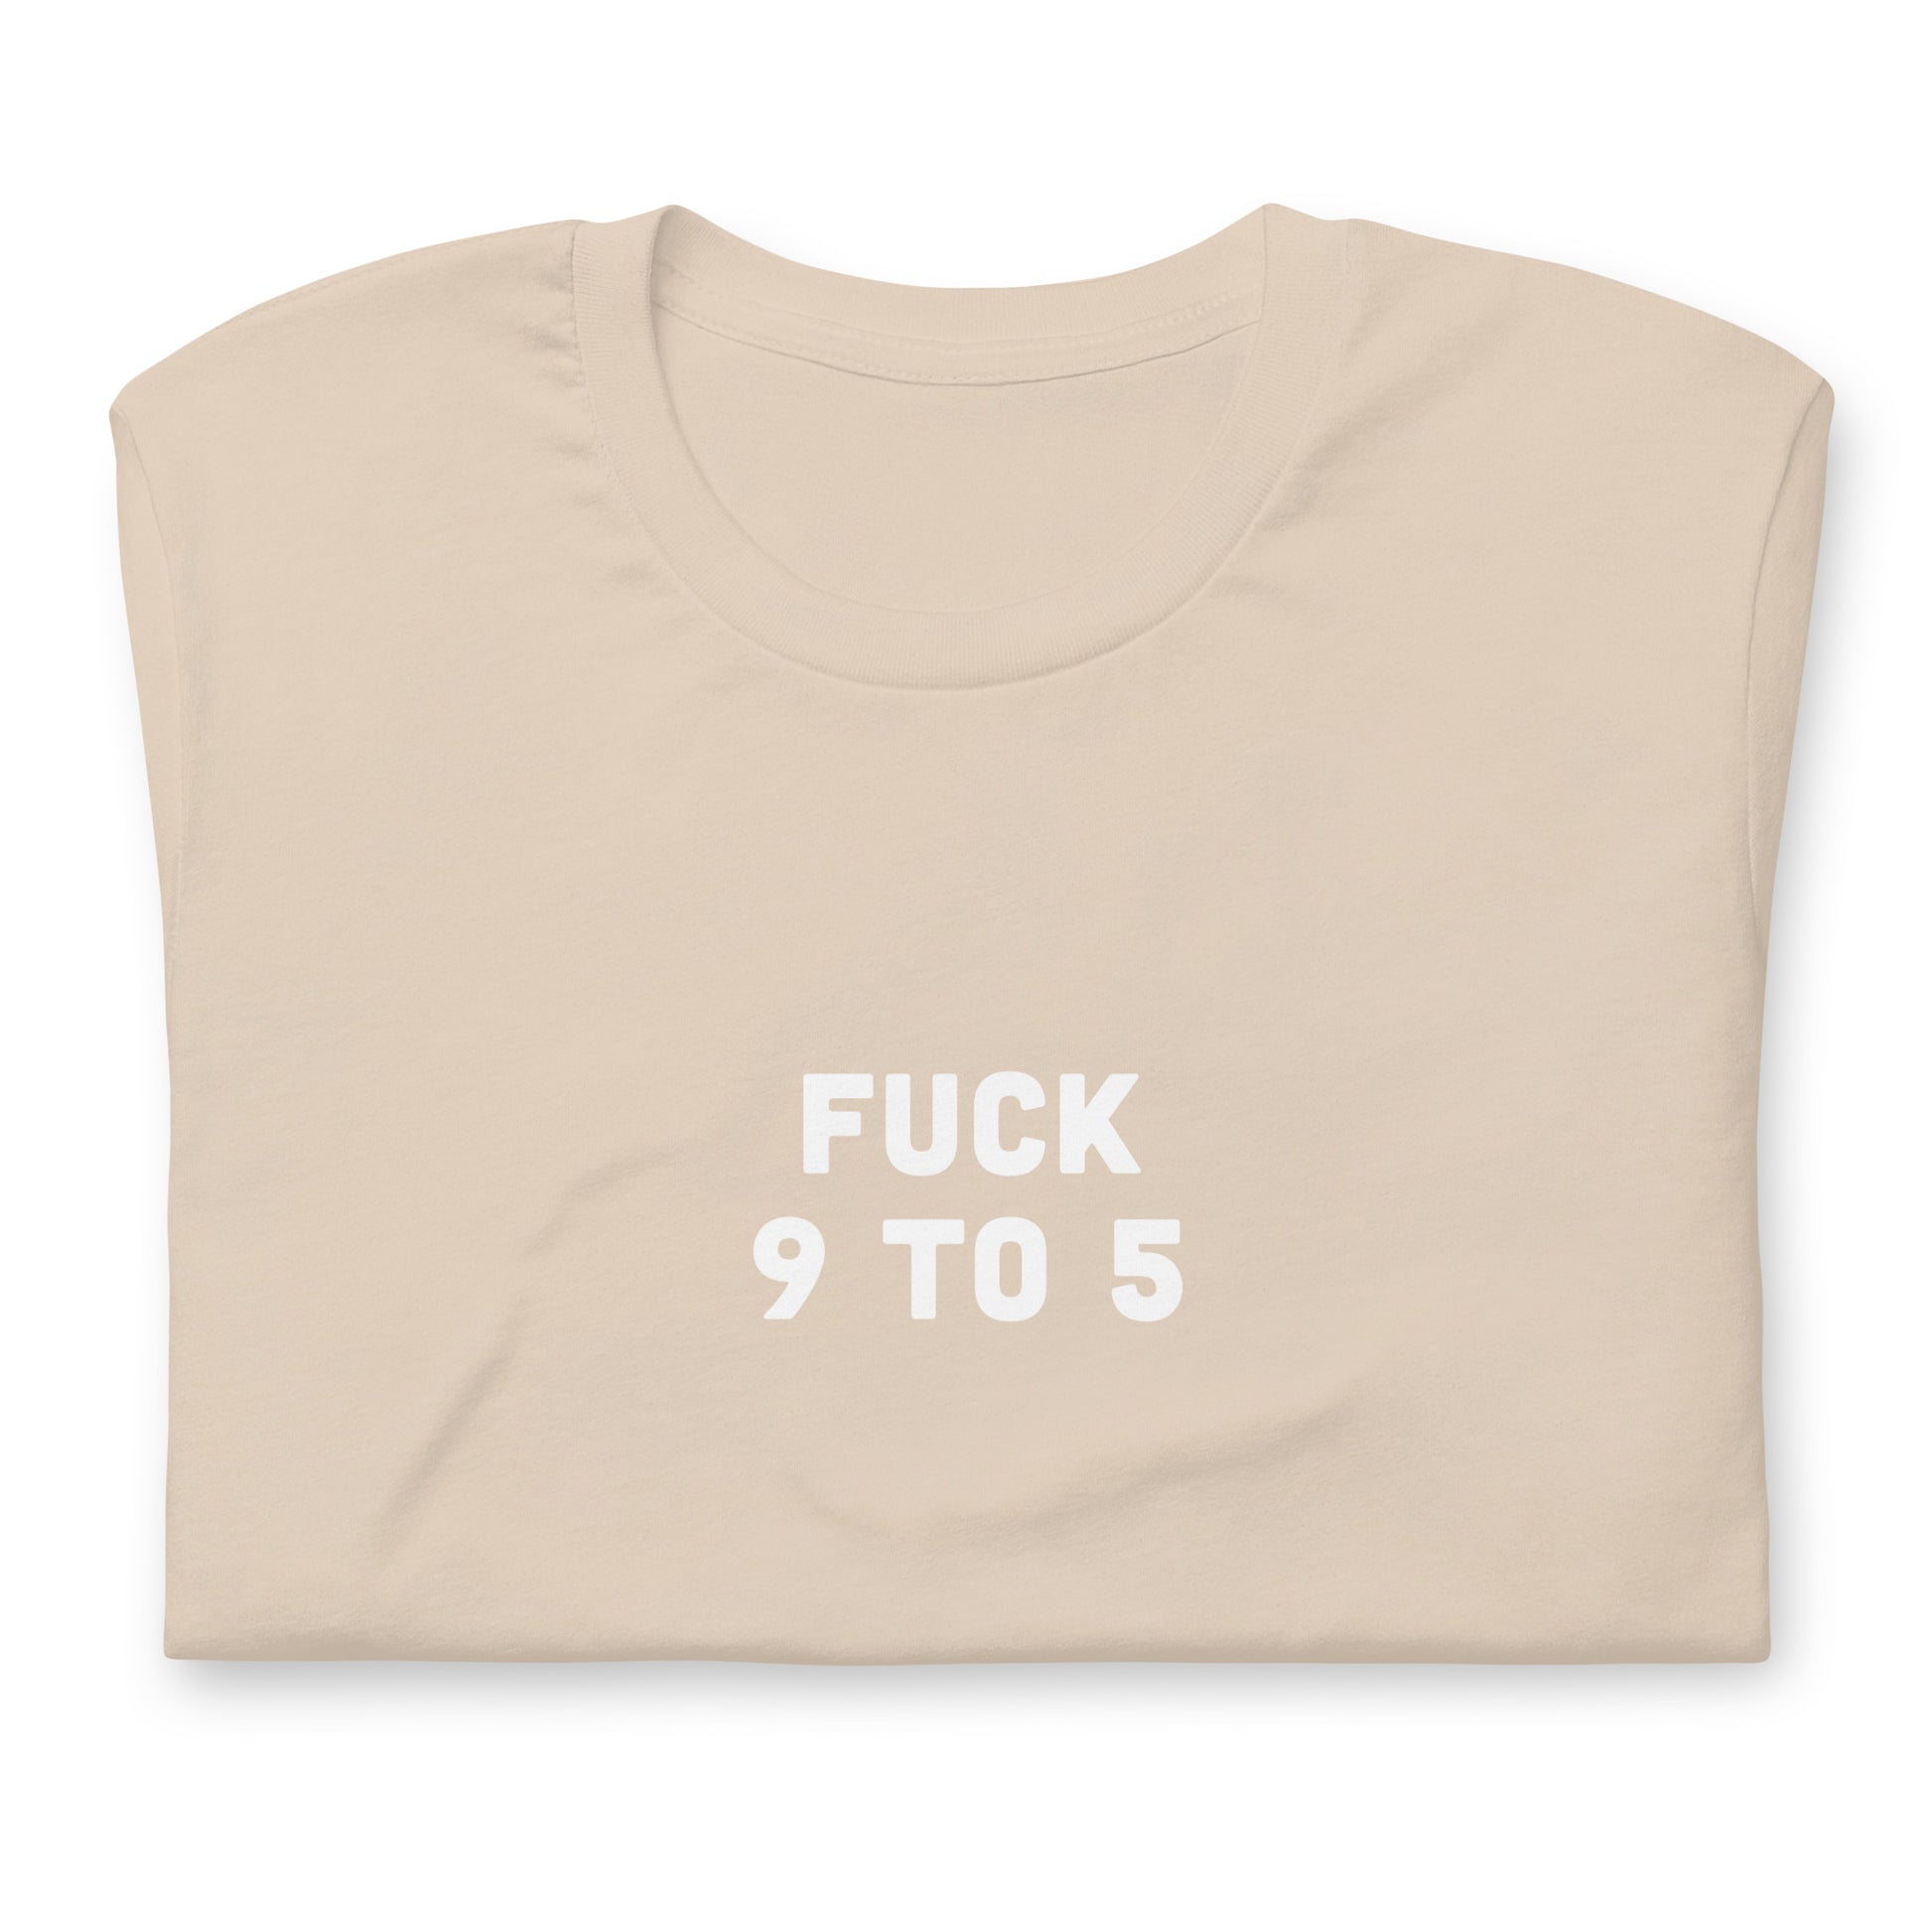 Fuck 9 To 5 T-Shirt Size L Color Asphalt